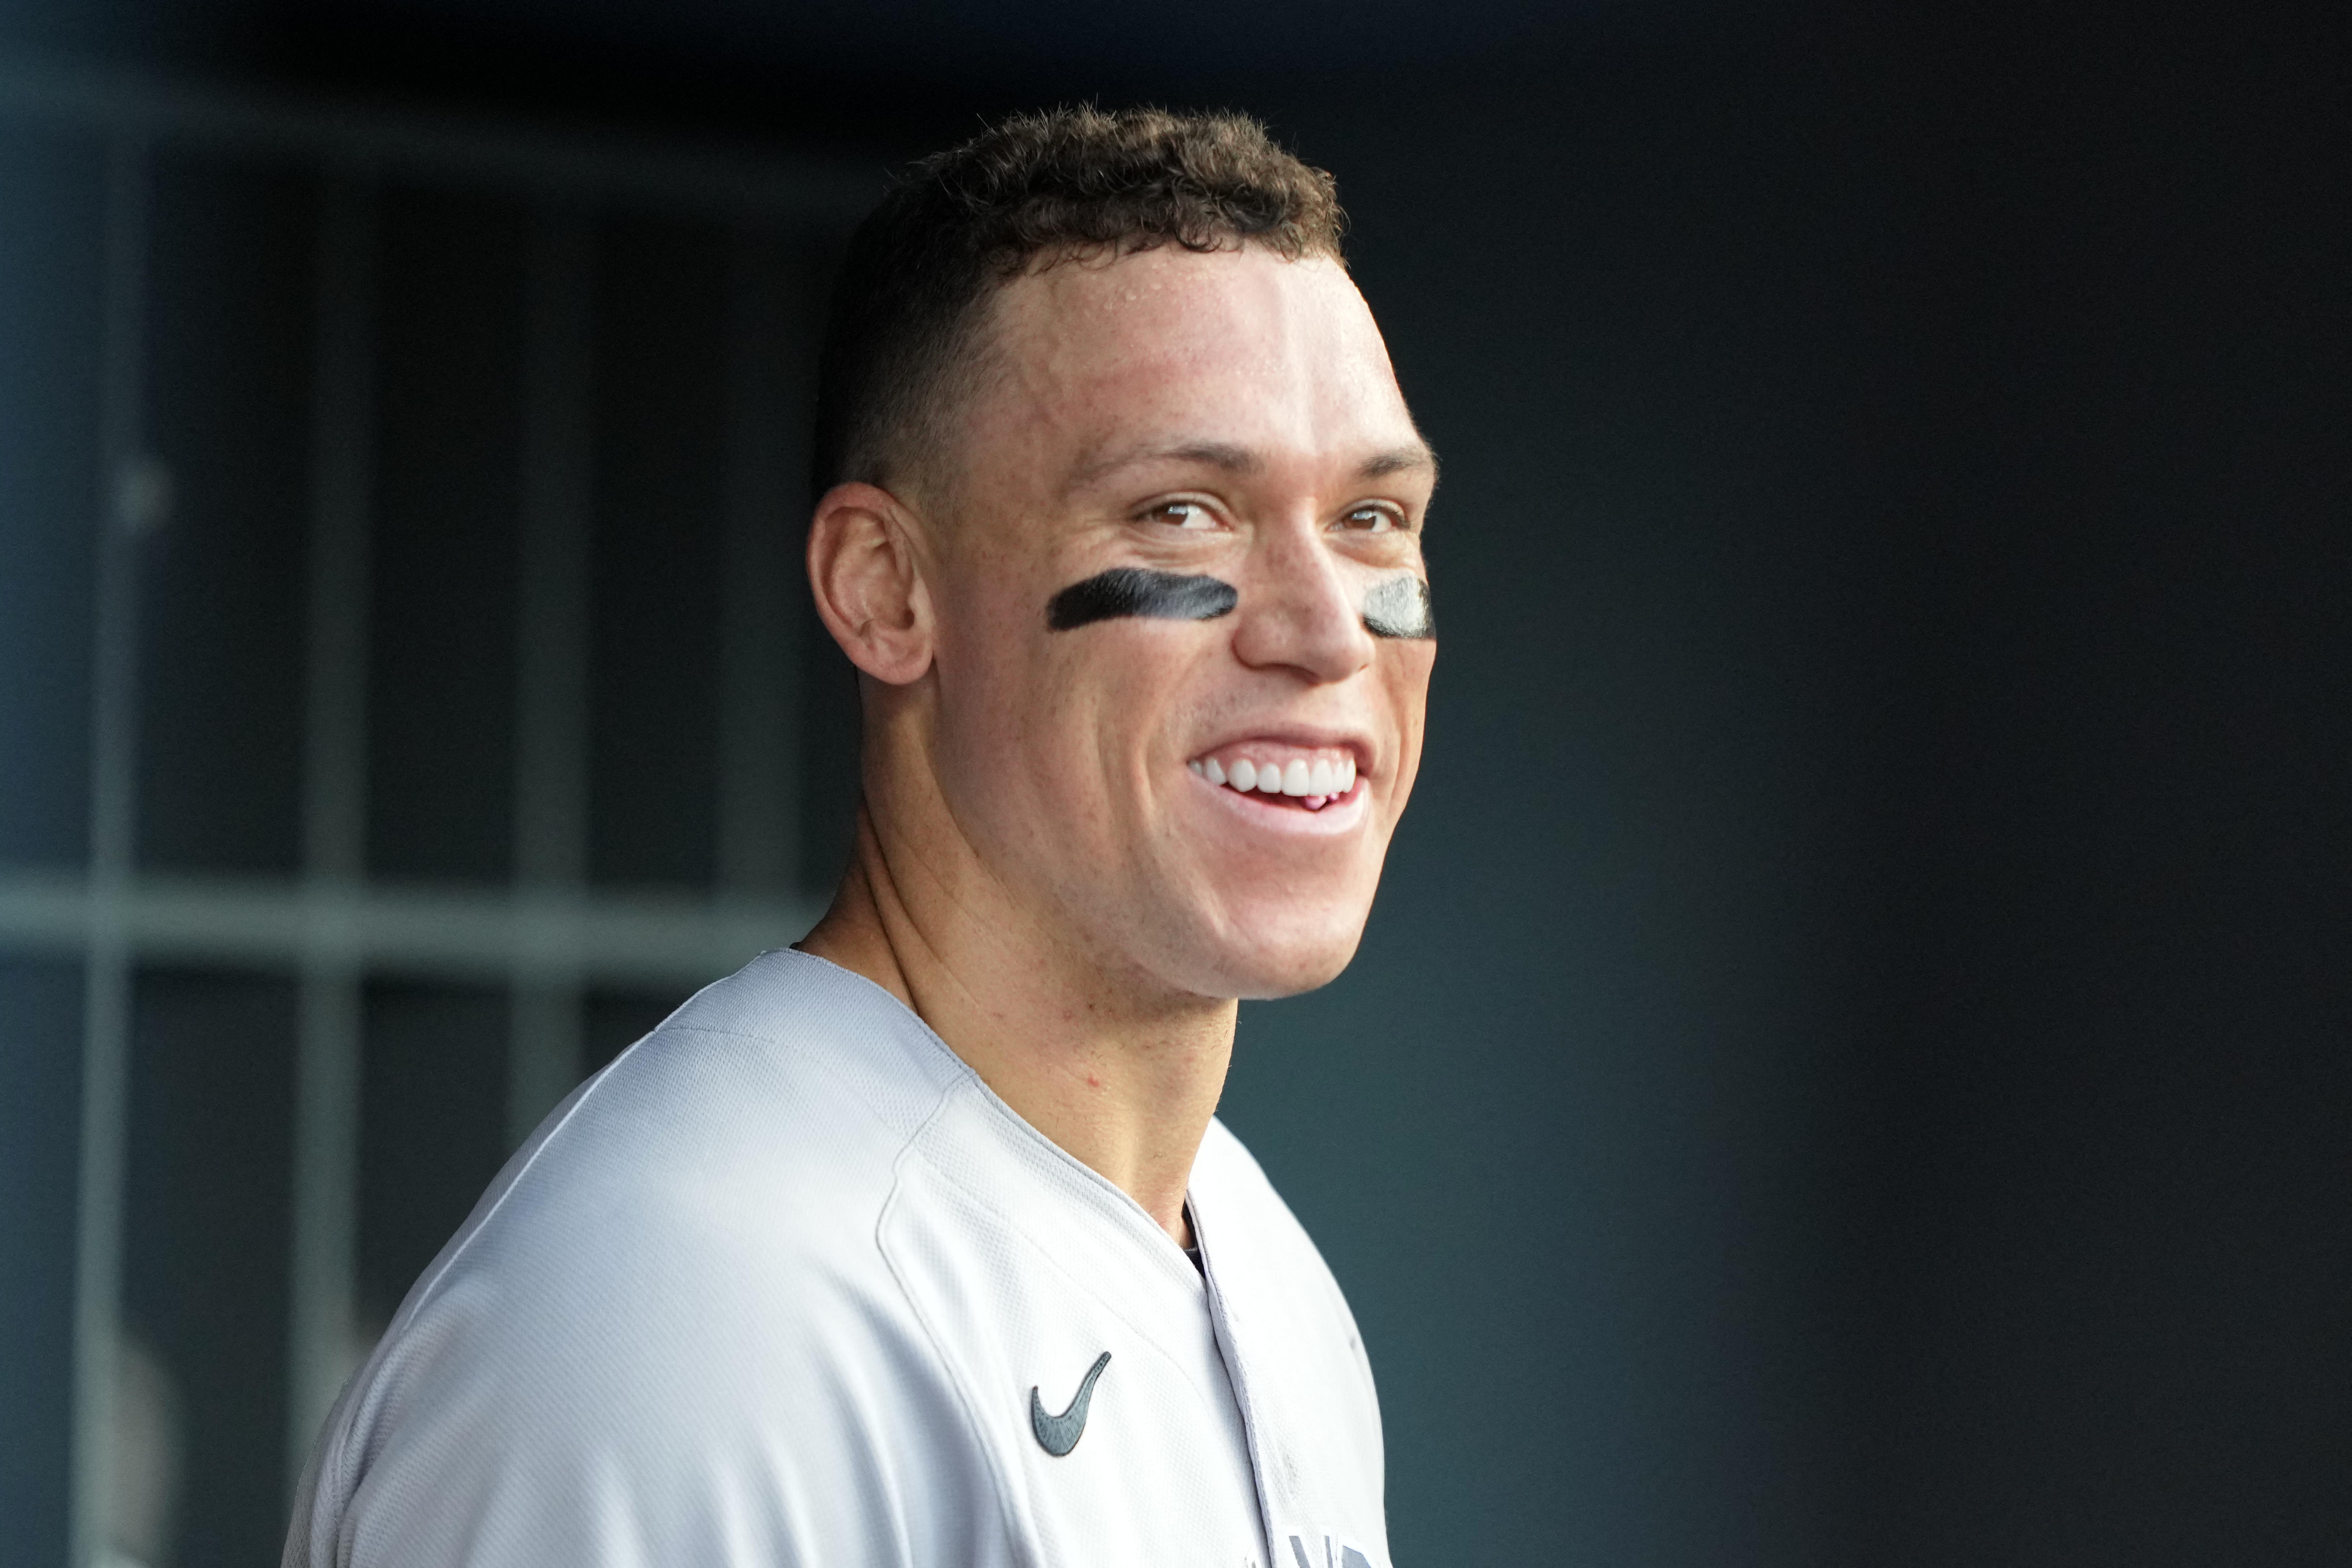 Yankees’ Aaron Judge hits important milestone in rehab as ‘swing looks great’